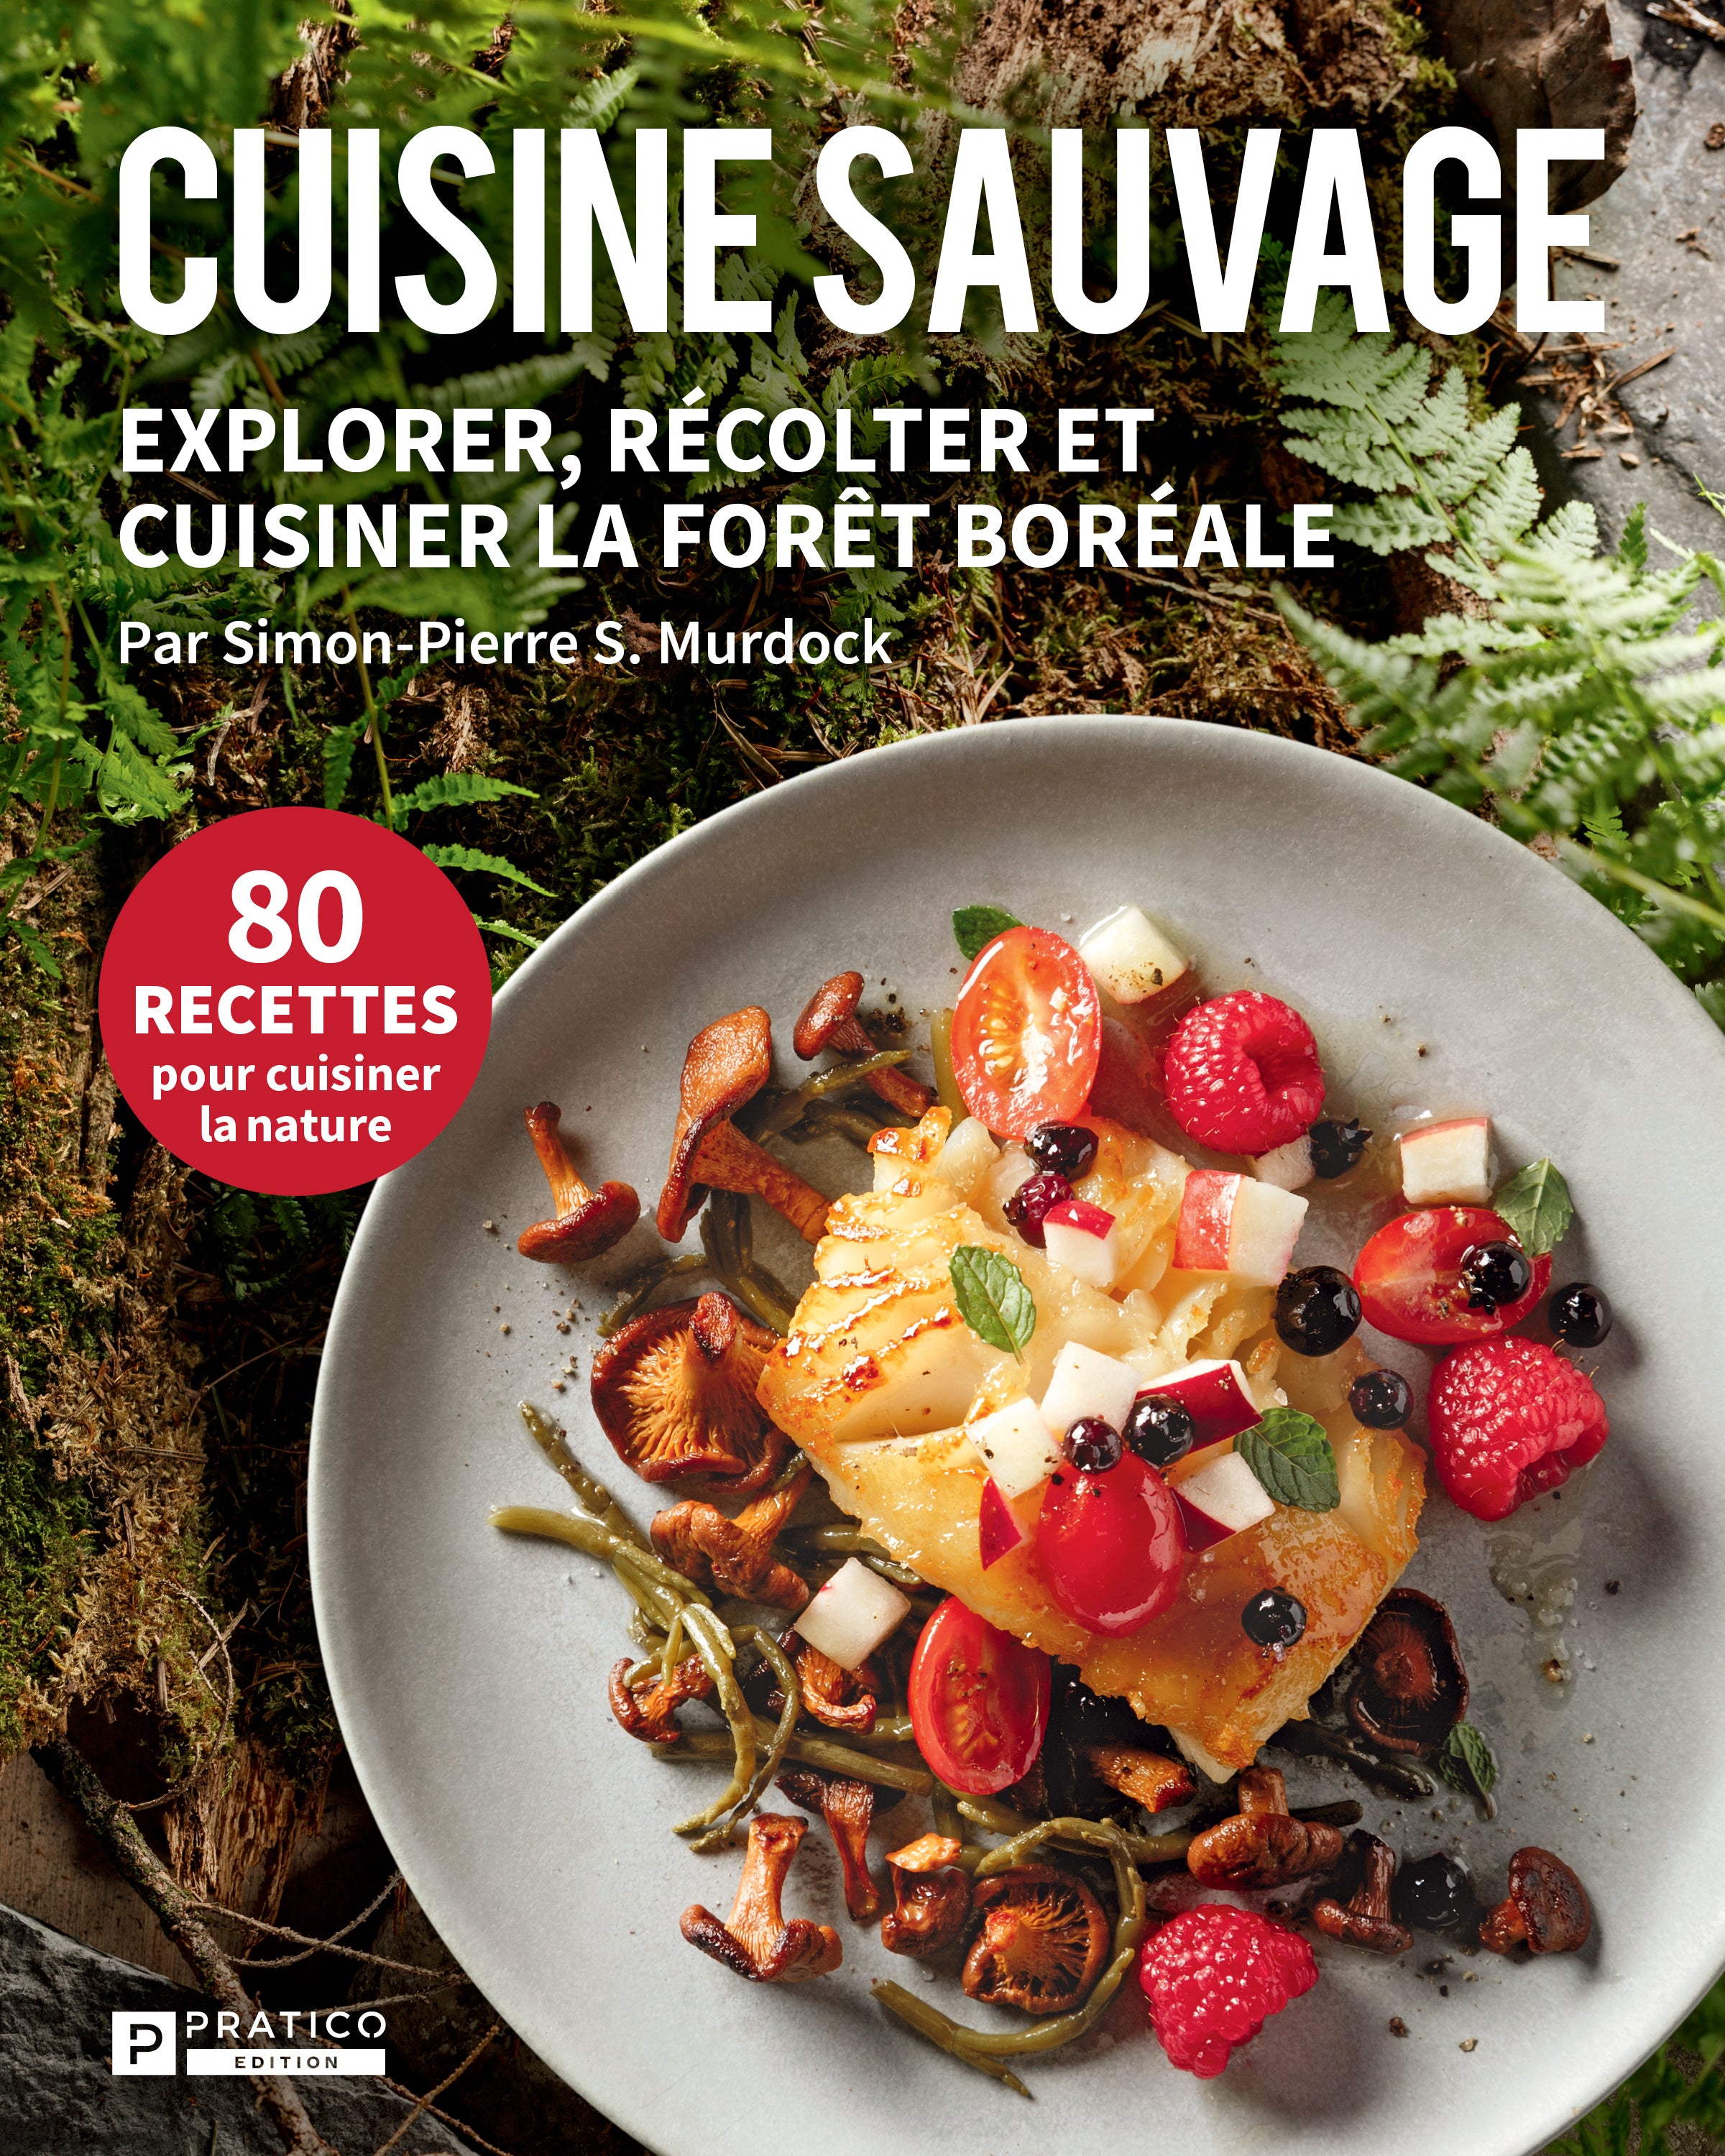 Cuisine Sauvage Explorer Recolter Et Cuisiner La Foret Boreale Morille Quebec